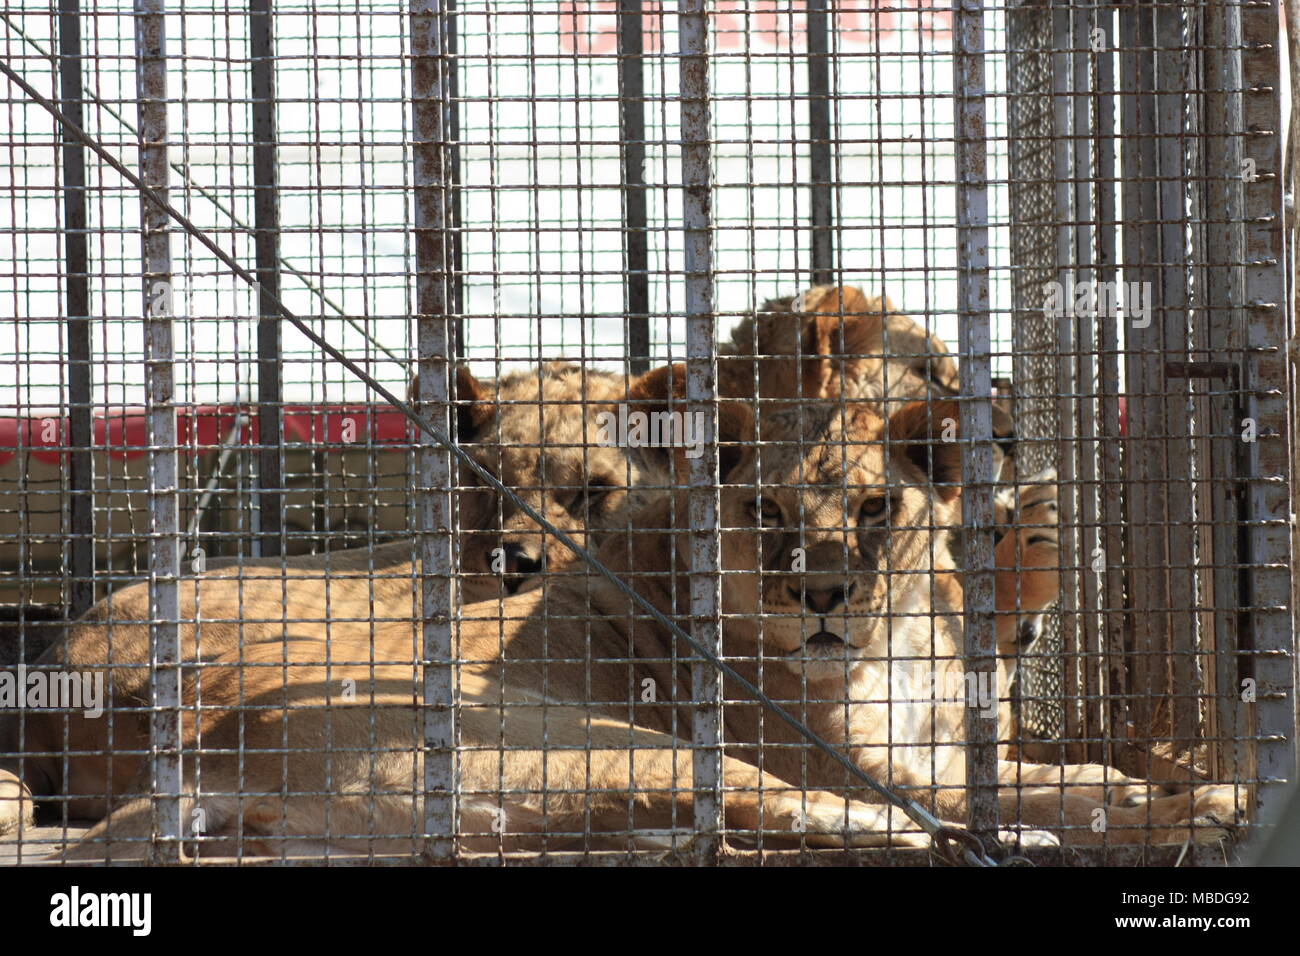 El león se asienta en una jaula y mirada triste a través de las rejas. Foto de stock